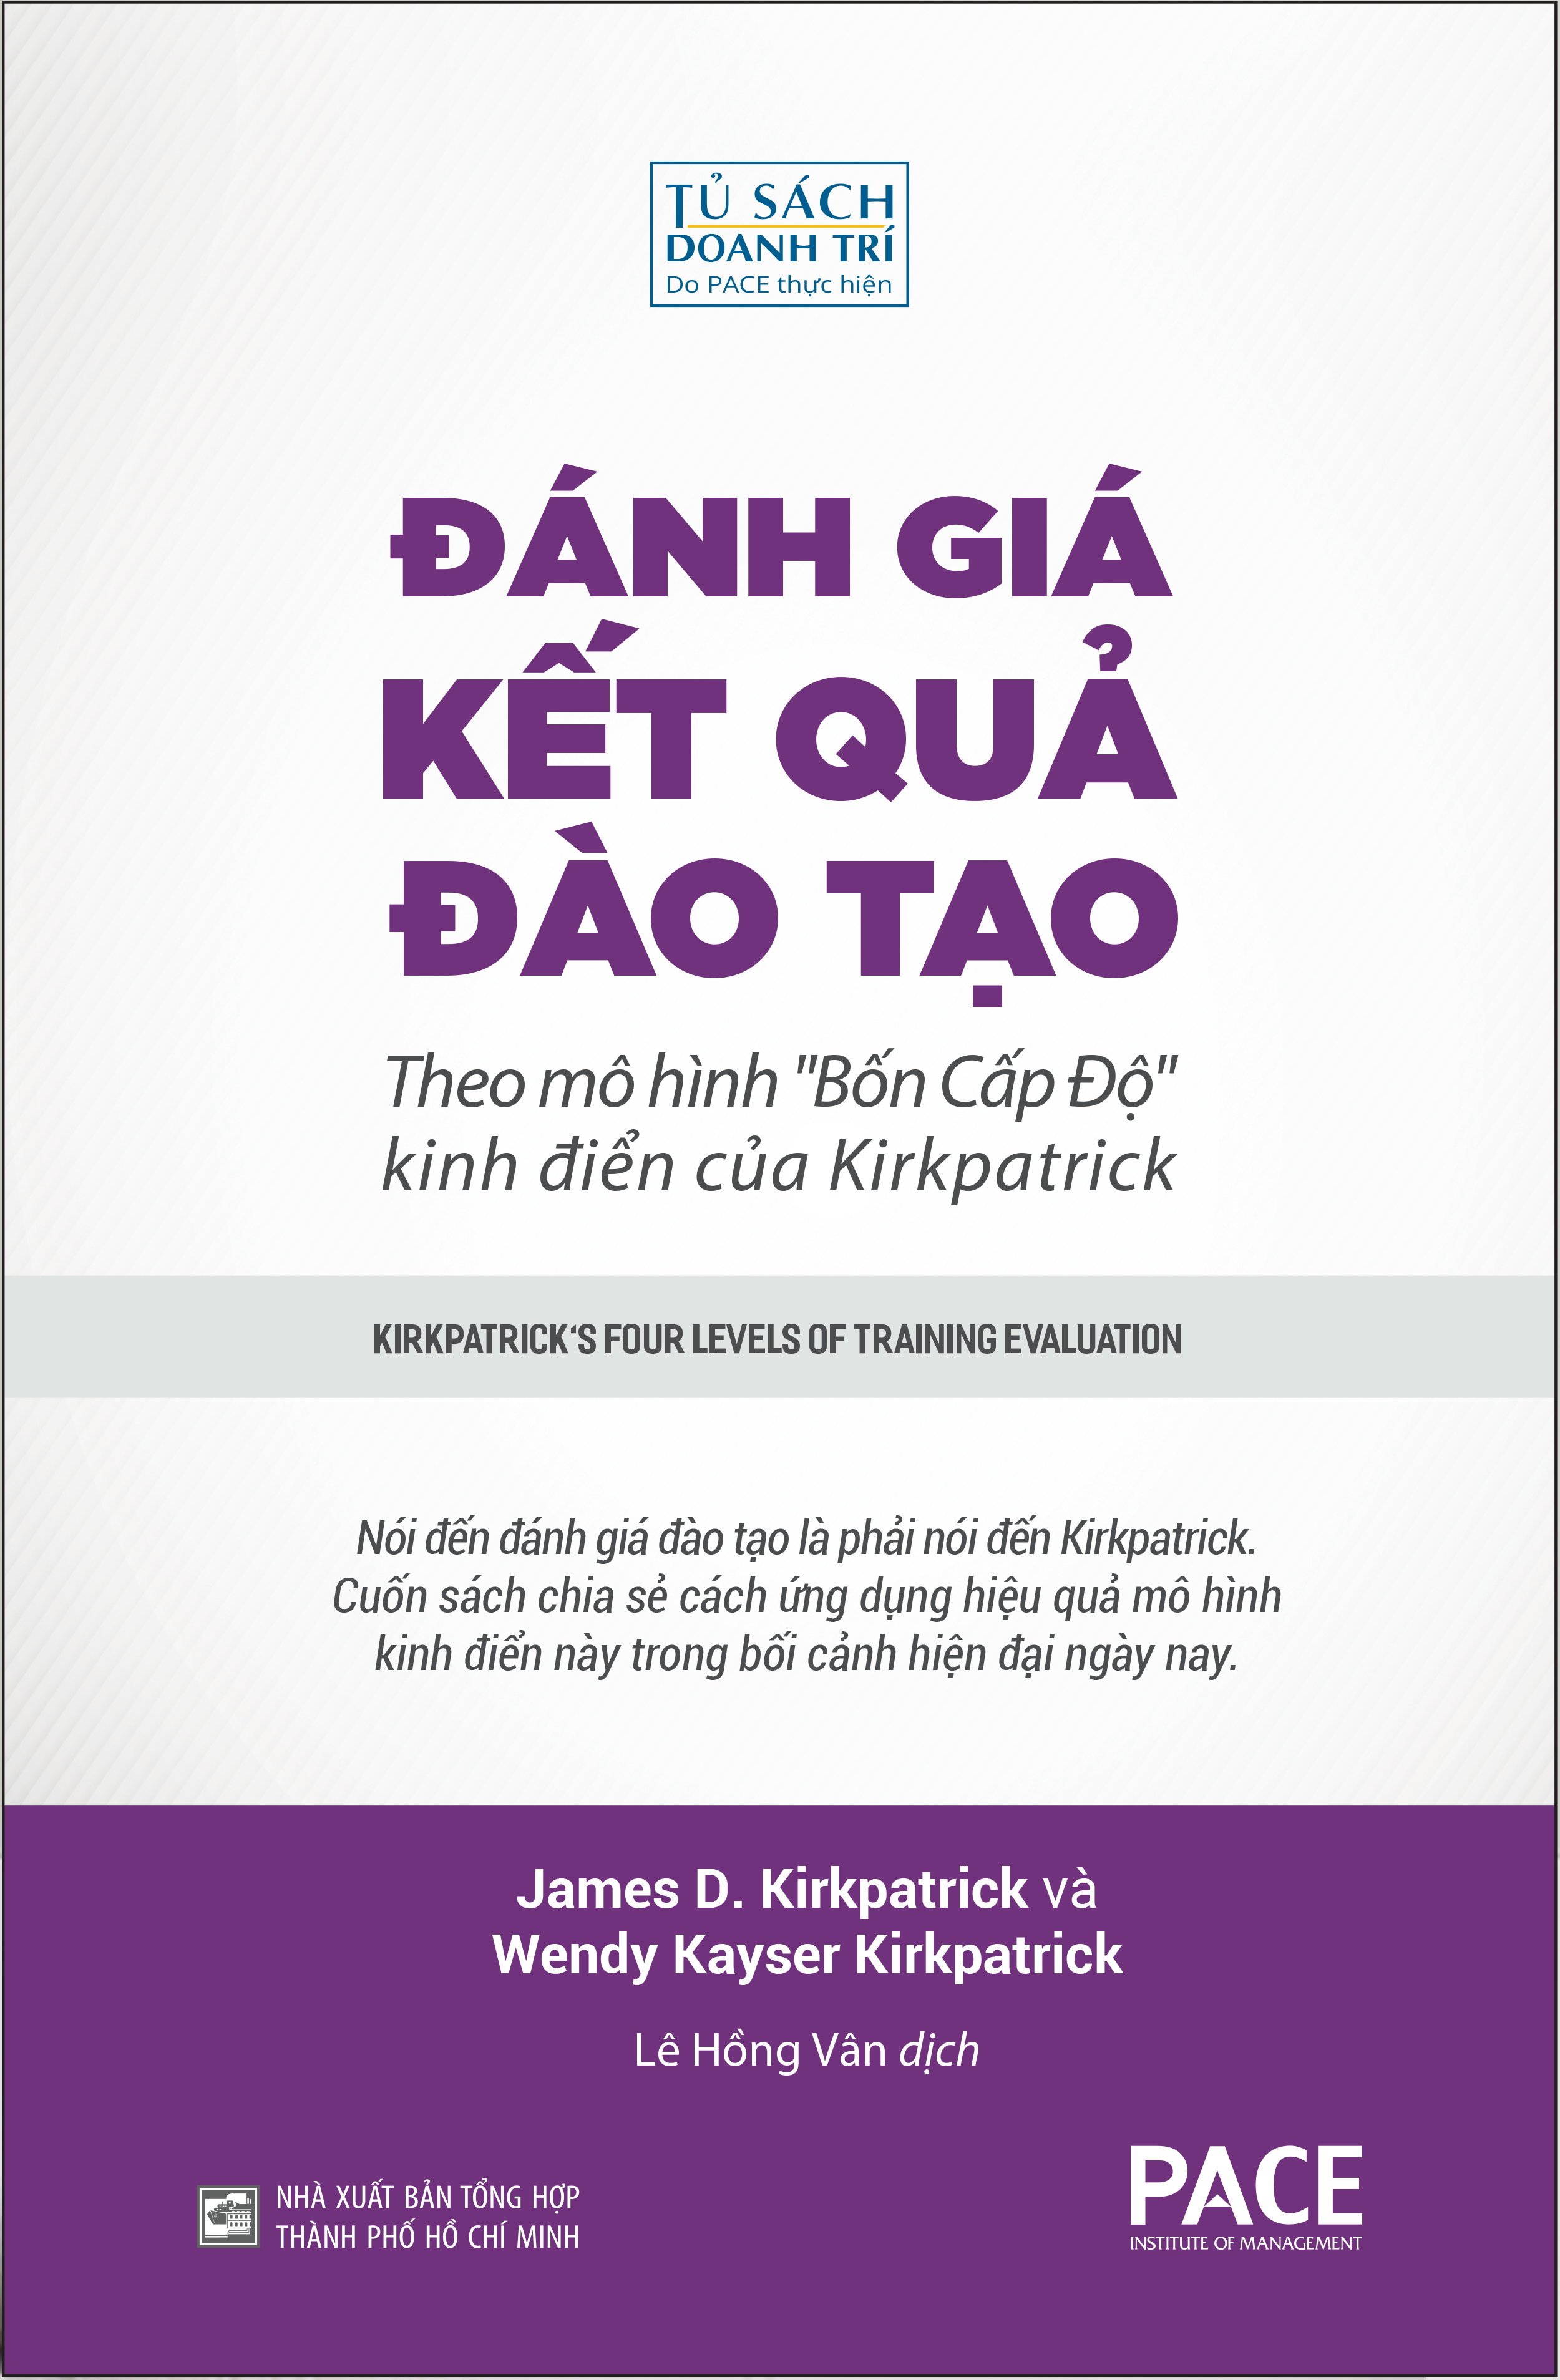 ĐÁNH GIÁ KẾT QUẢ ĐÀO TẠO (Kirkpatrick's Four Levels of Training Evaluation) - James D. Kirkpatrick và Wendy Kayser Kirkpatrick - Lê Hồng Vân dịch (bìa mềm)